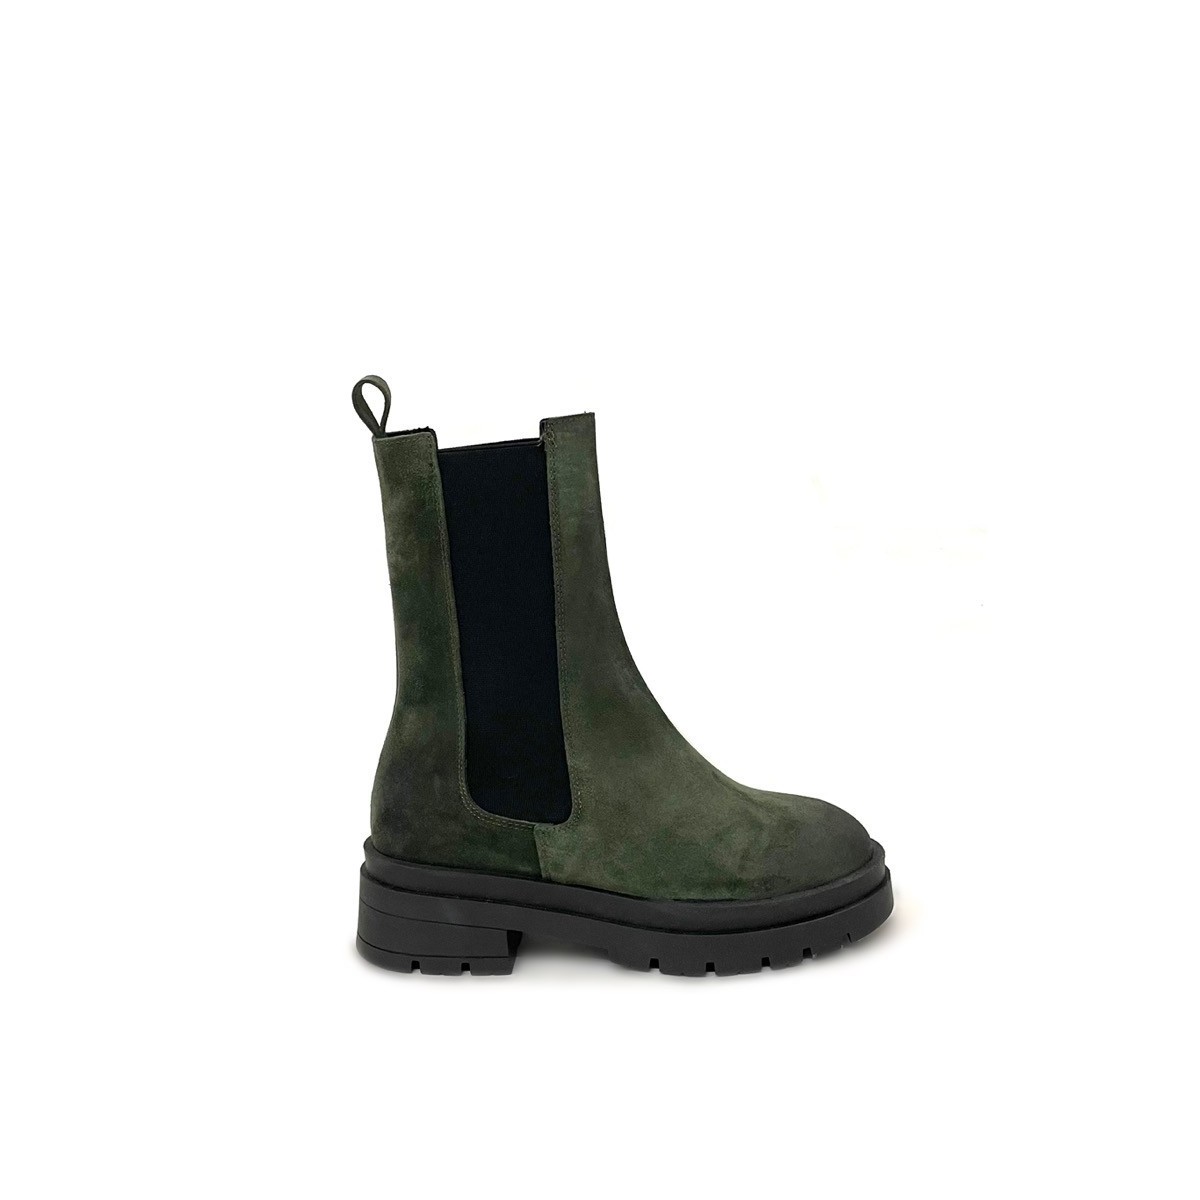 Stivaletti combat boots camoscio verde